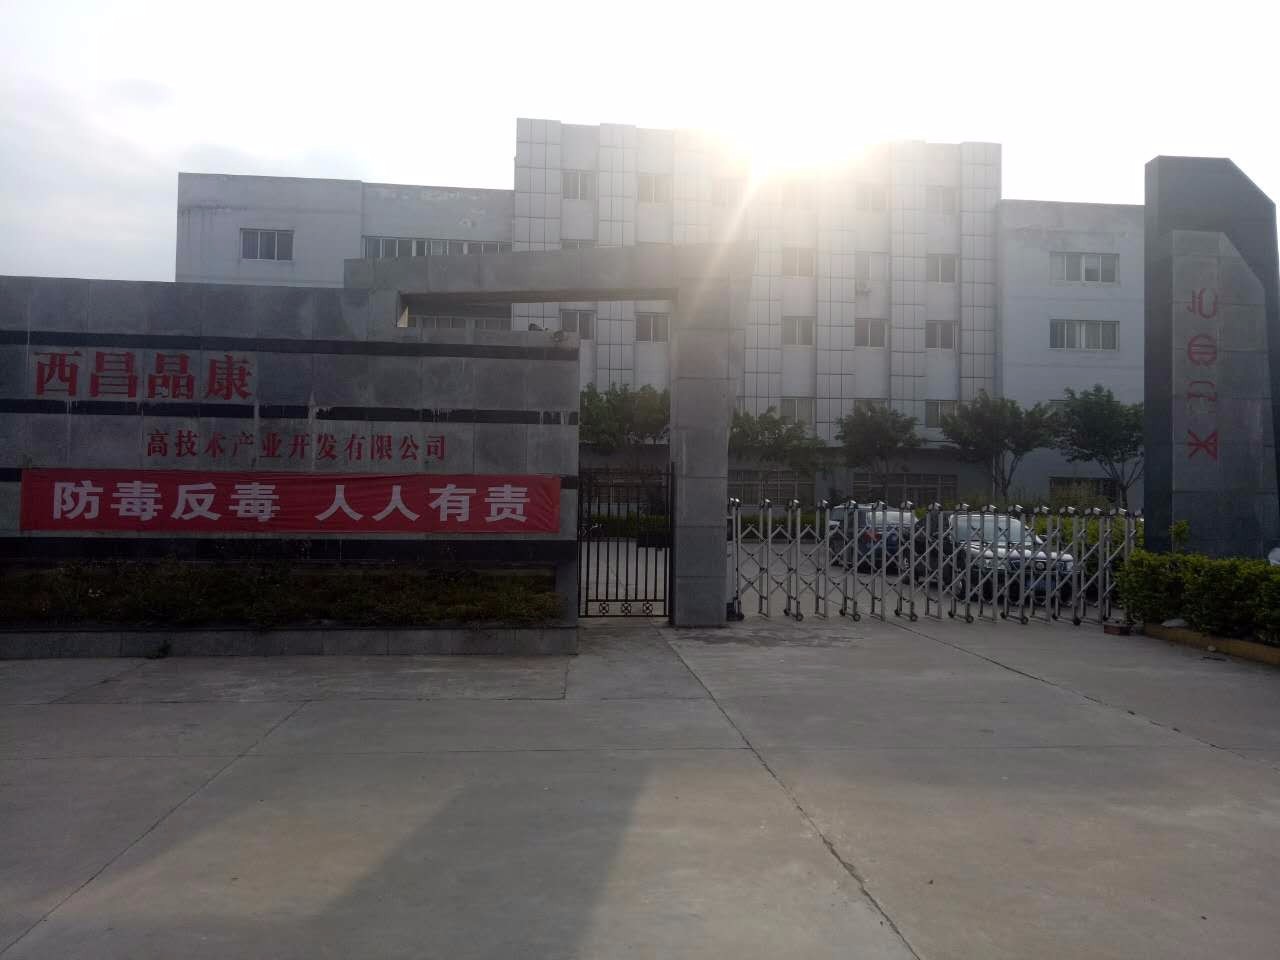 西昌晶康高技术产业开发有限公司